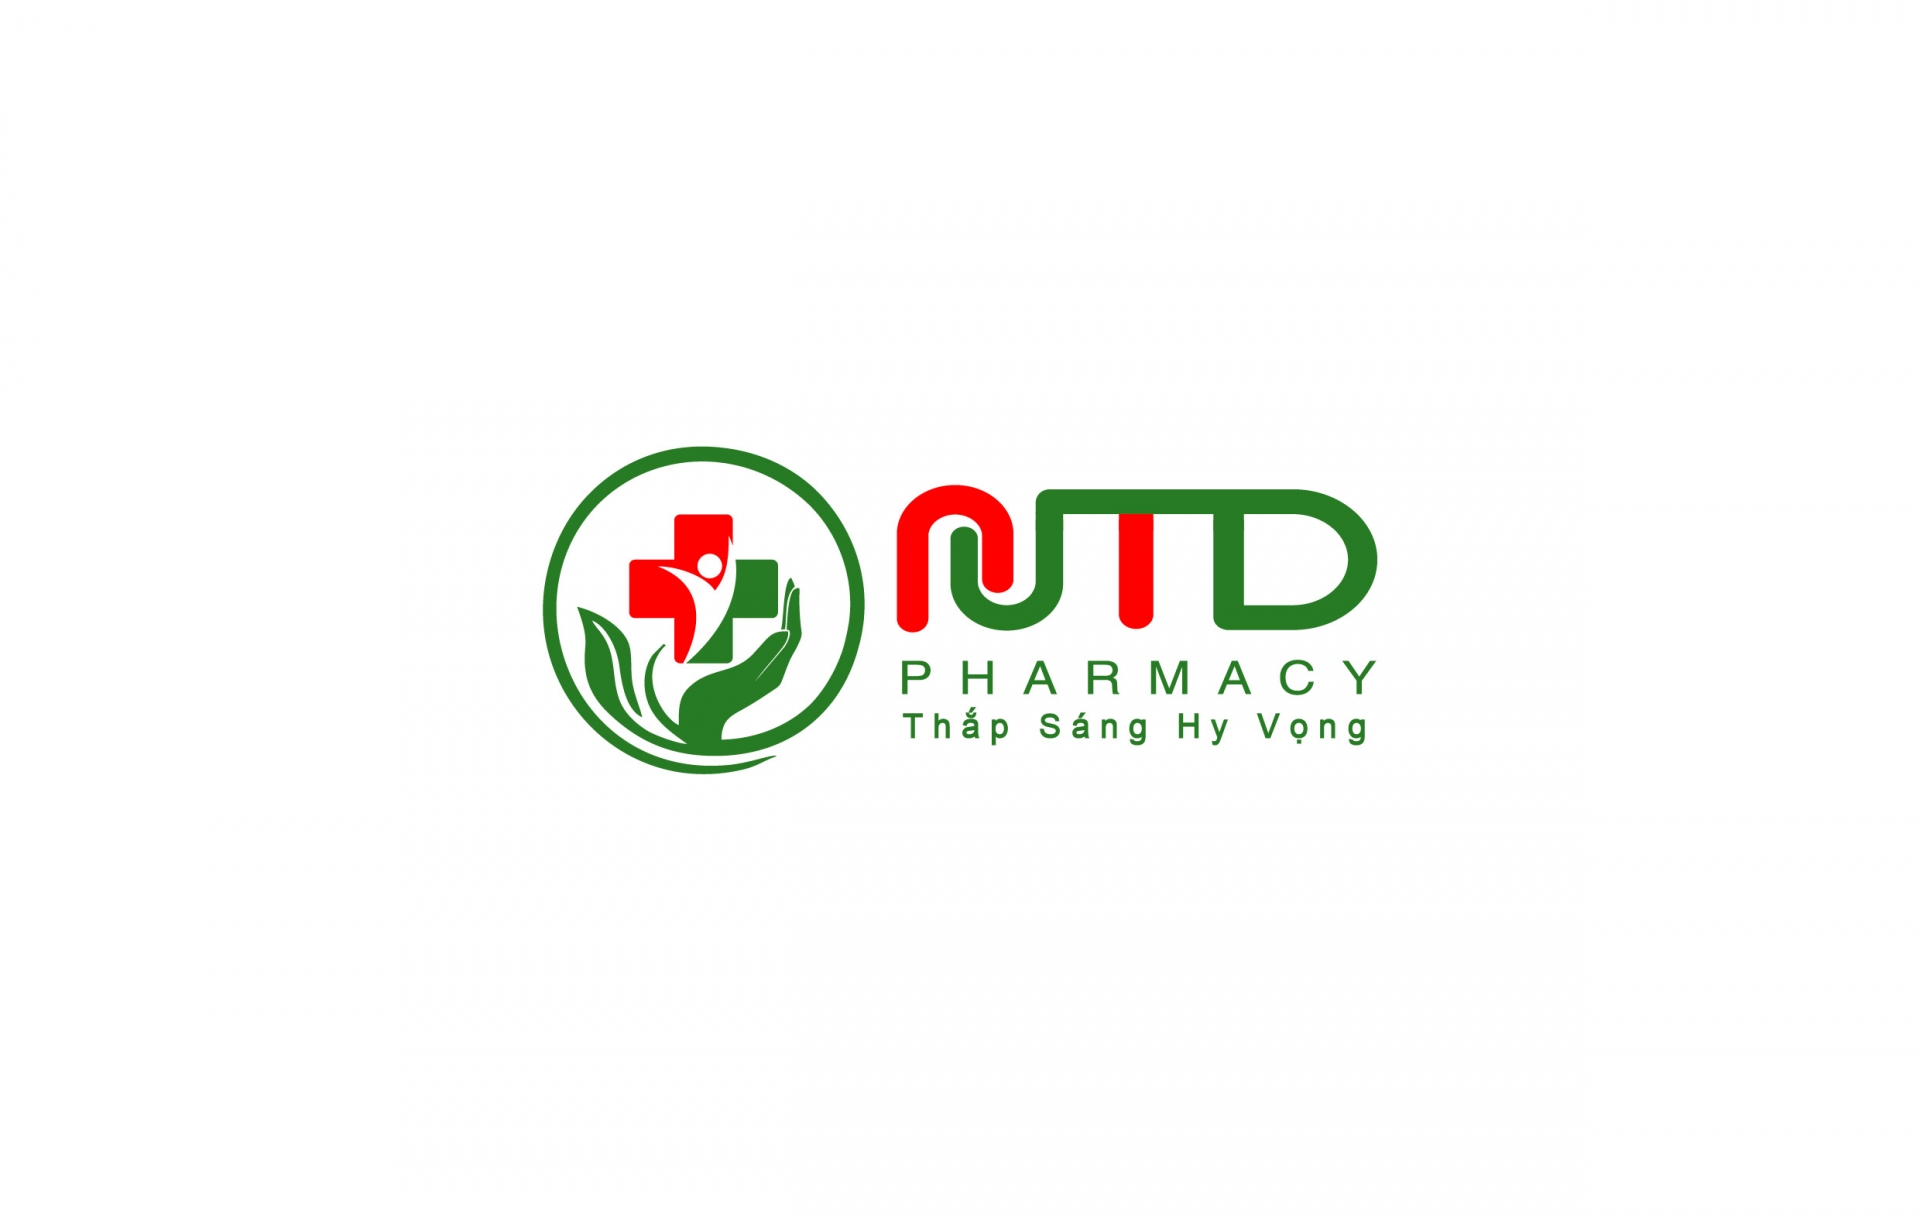 Nam Thái Dương Pharma